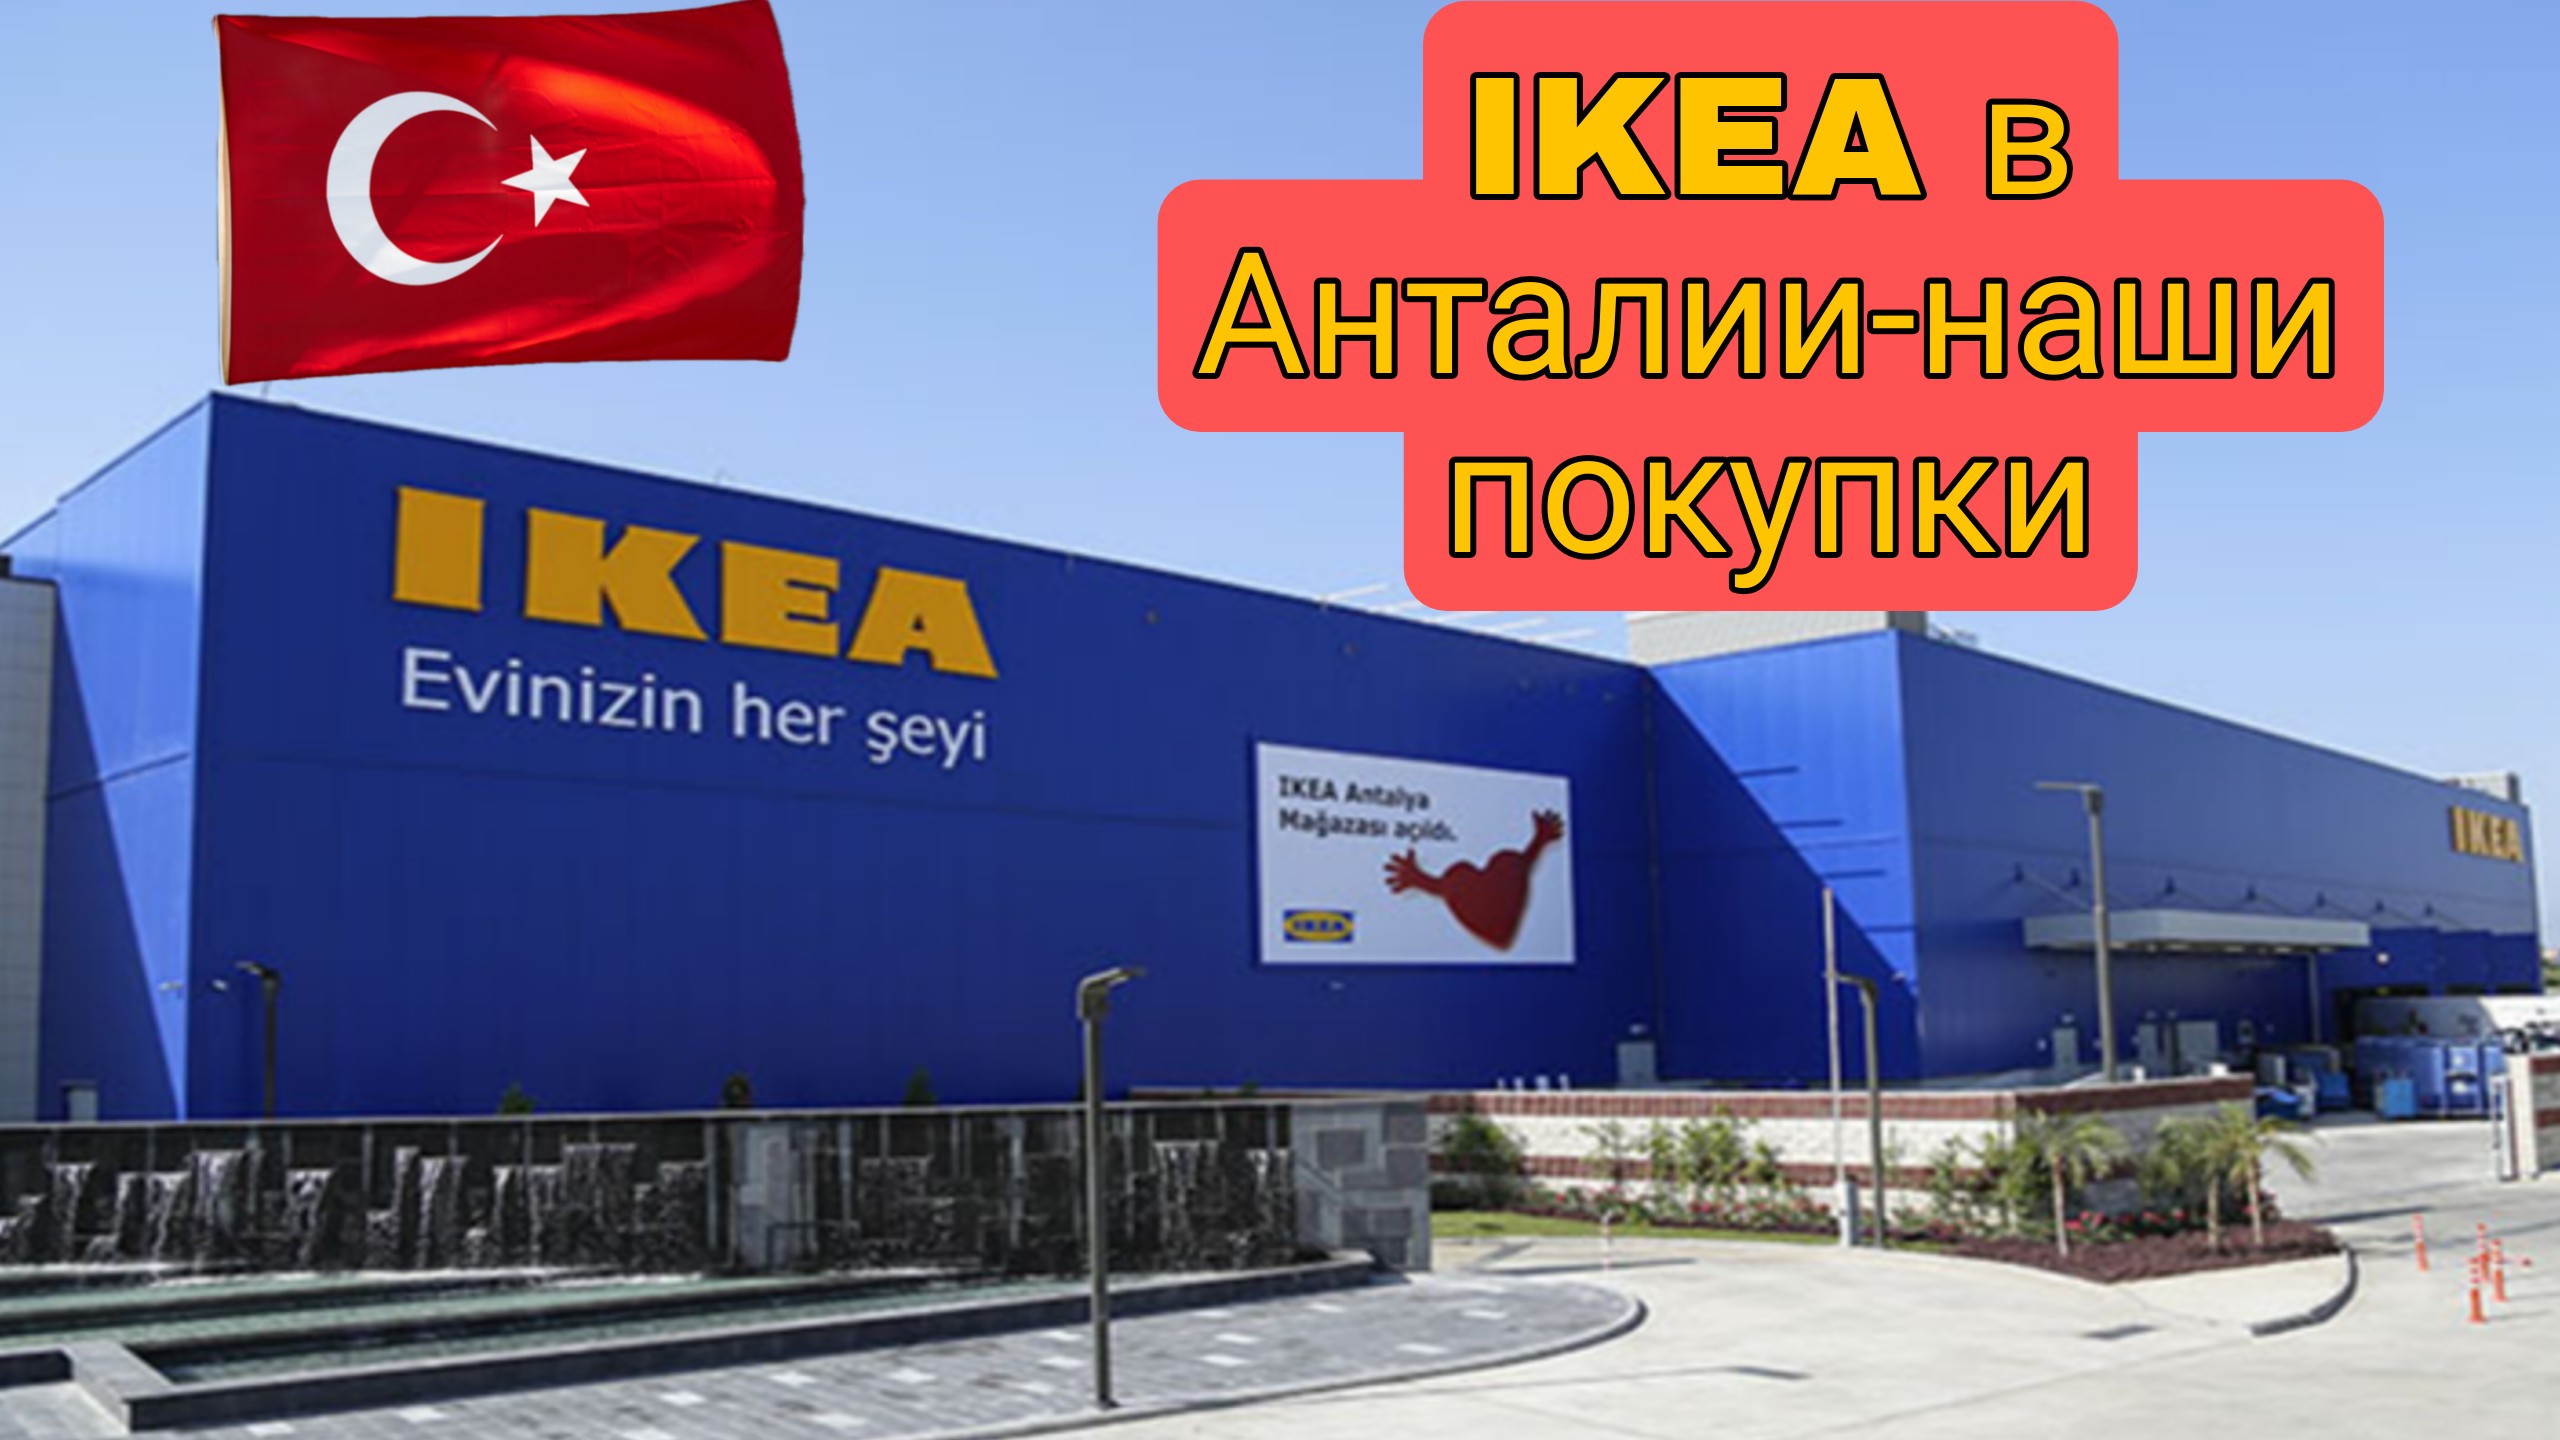 Икеа турция на русском. Ikea Анталья. Икеа в Анталии. Икеа Турция. Ikea Turkey Antalya.